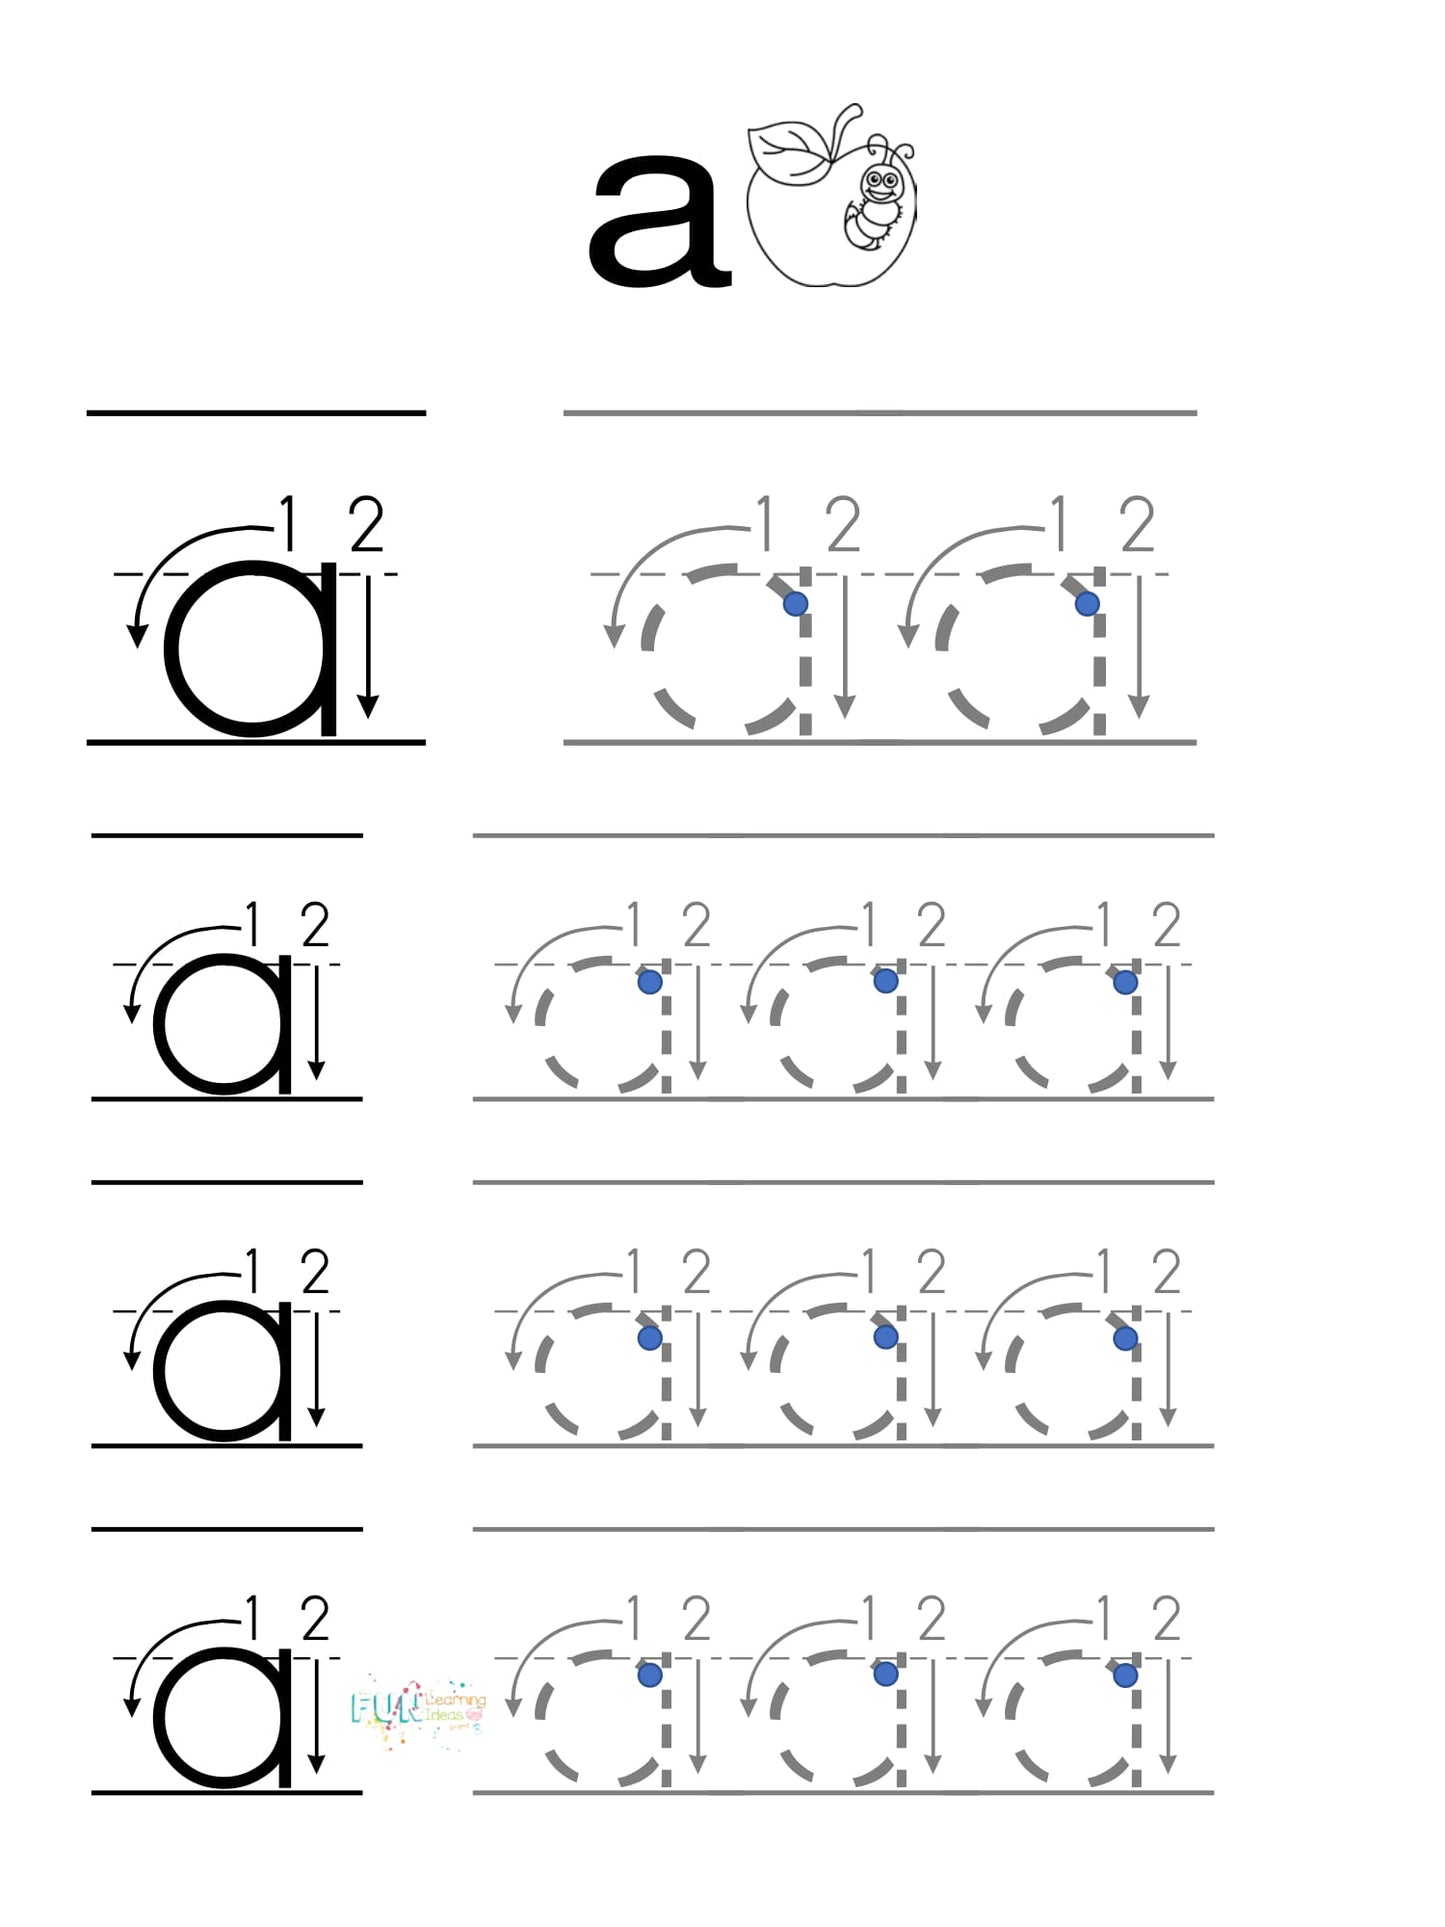 Hands On Preschool Alphabet Workbook